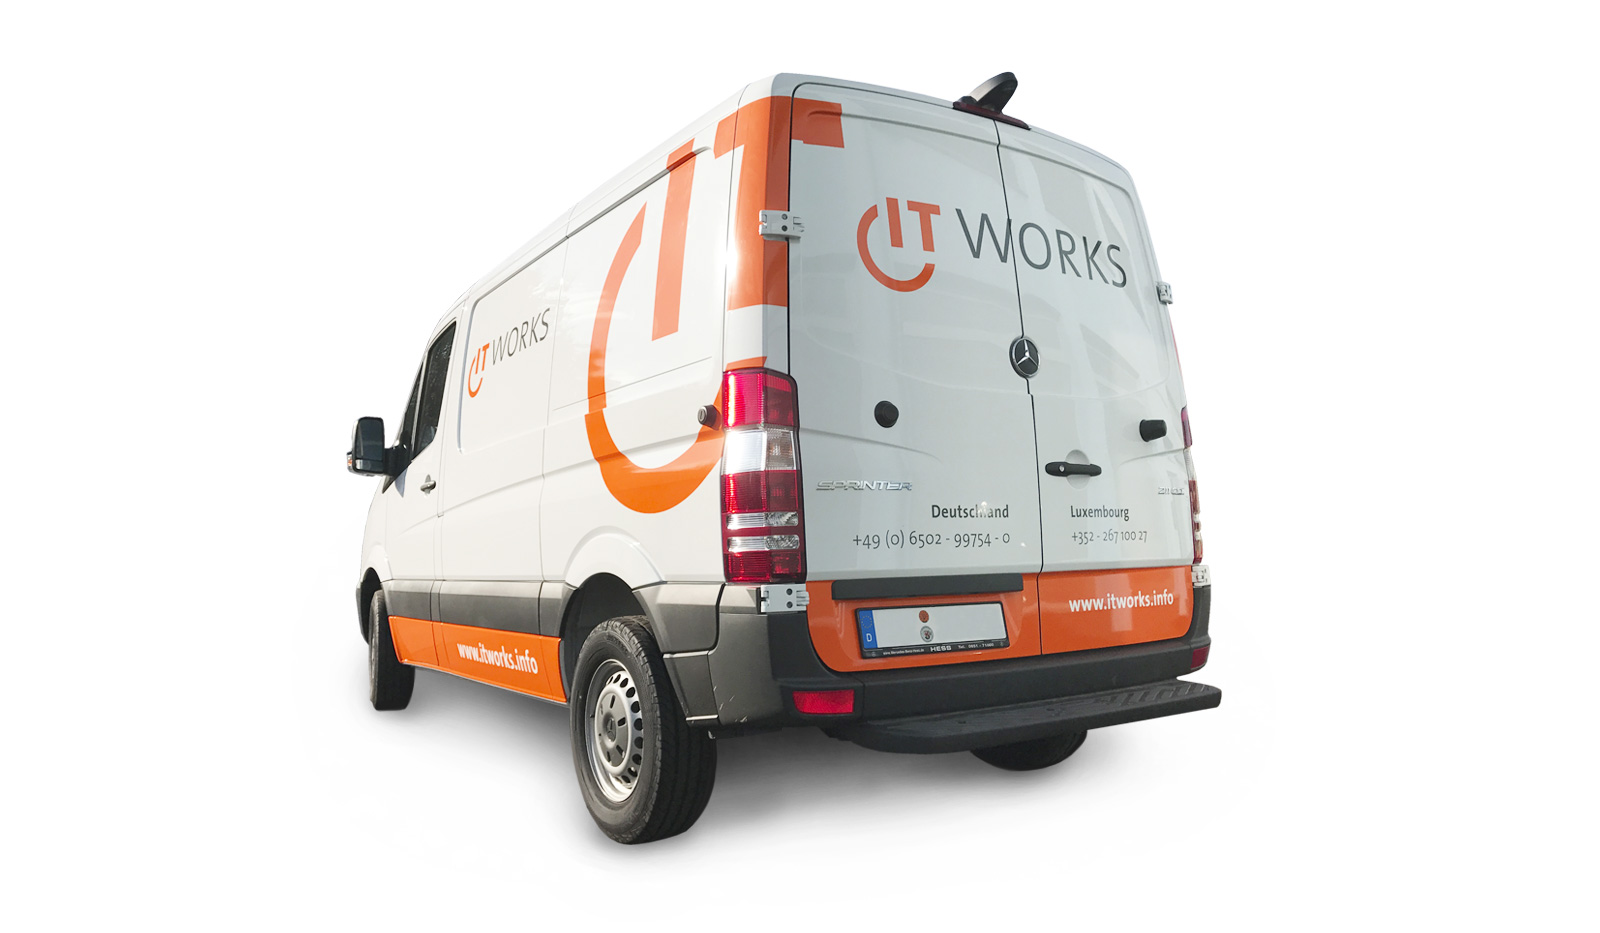 ITworks - Ein folierter Transporter des Unternehmens